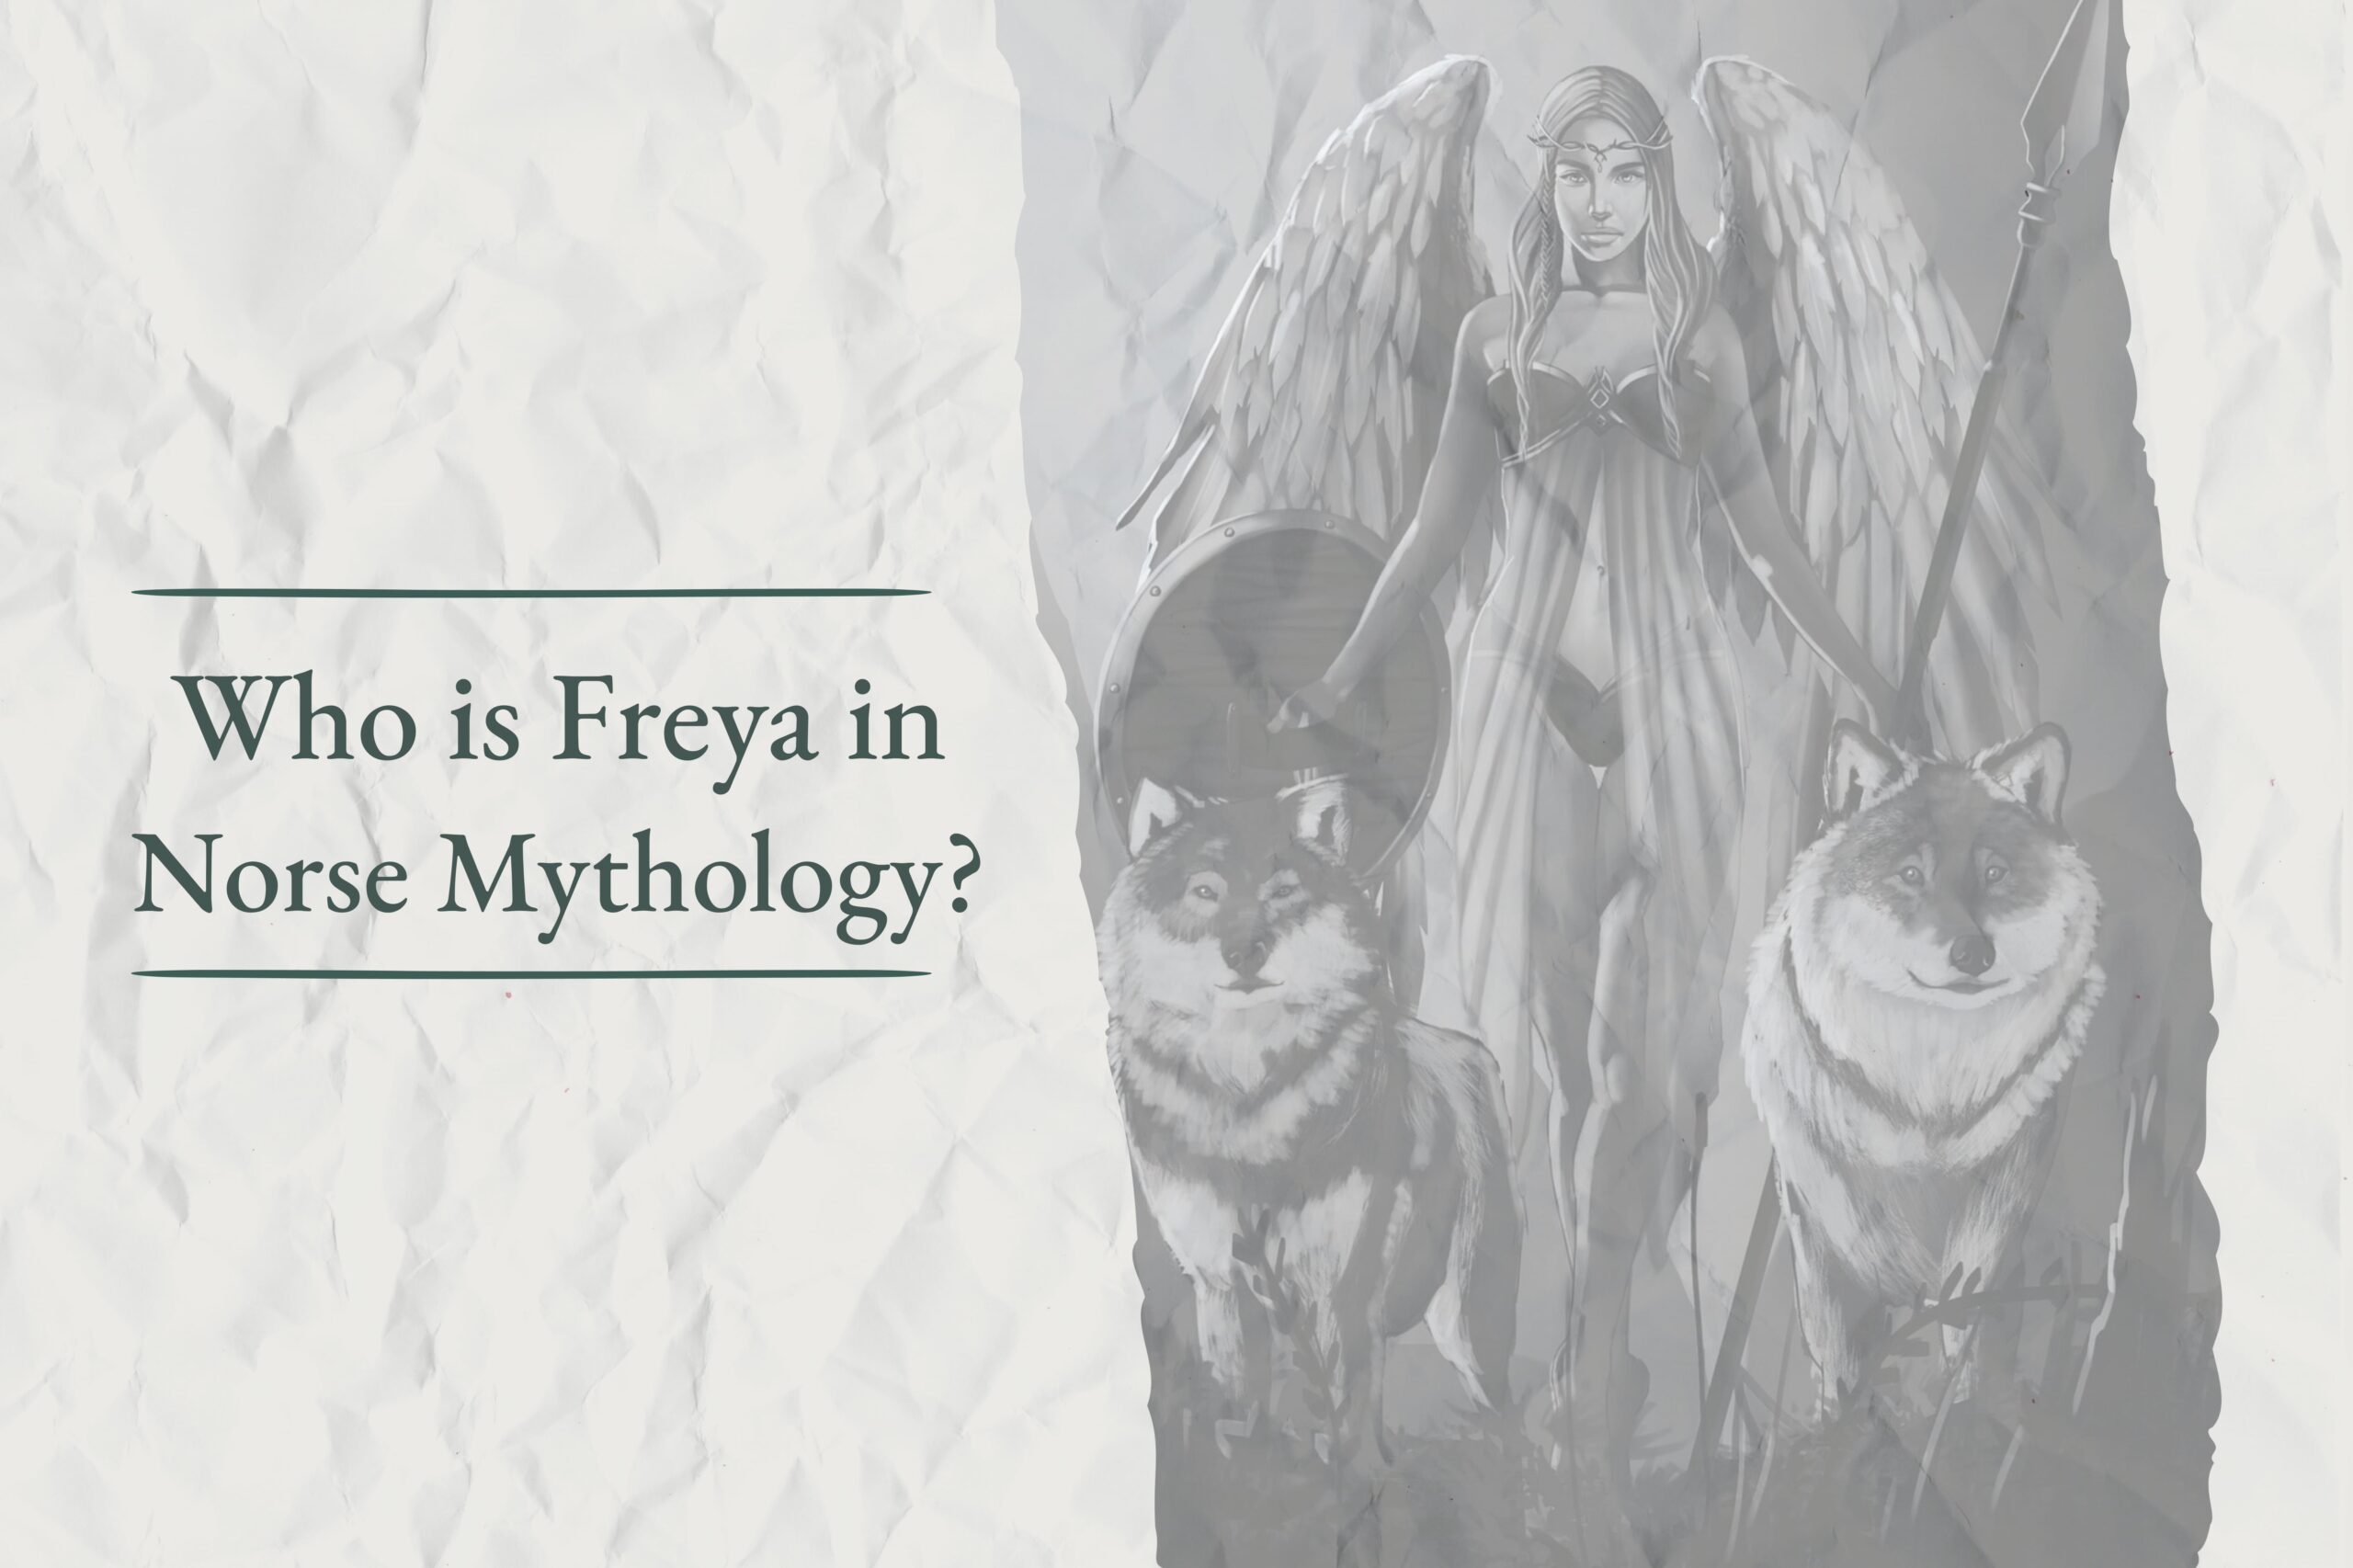 Freya in Norse mythology